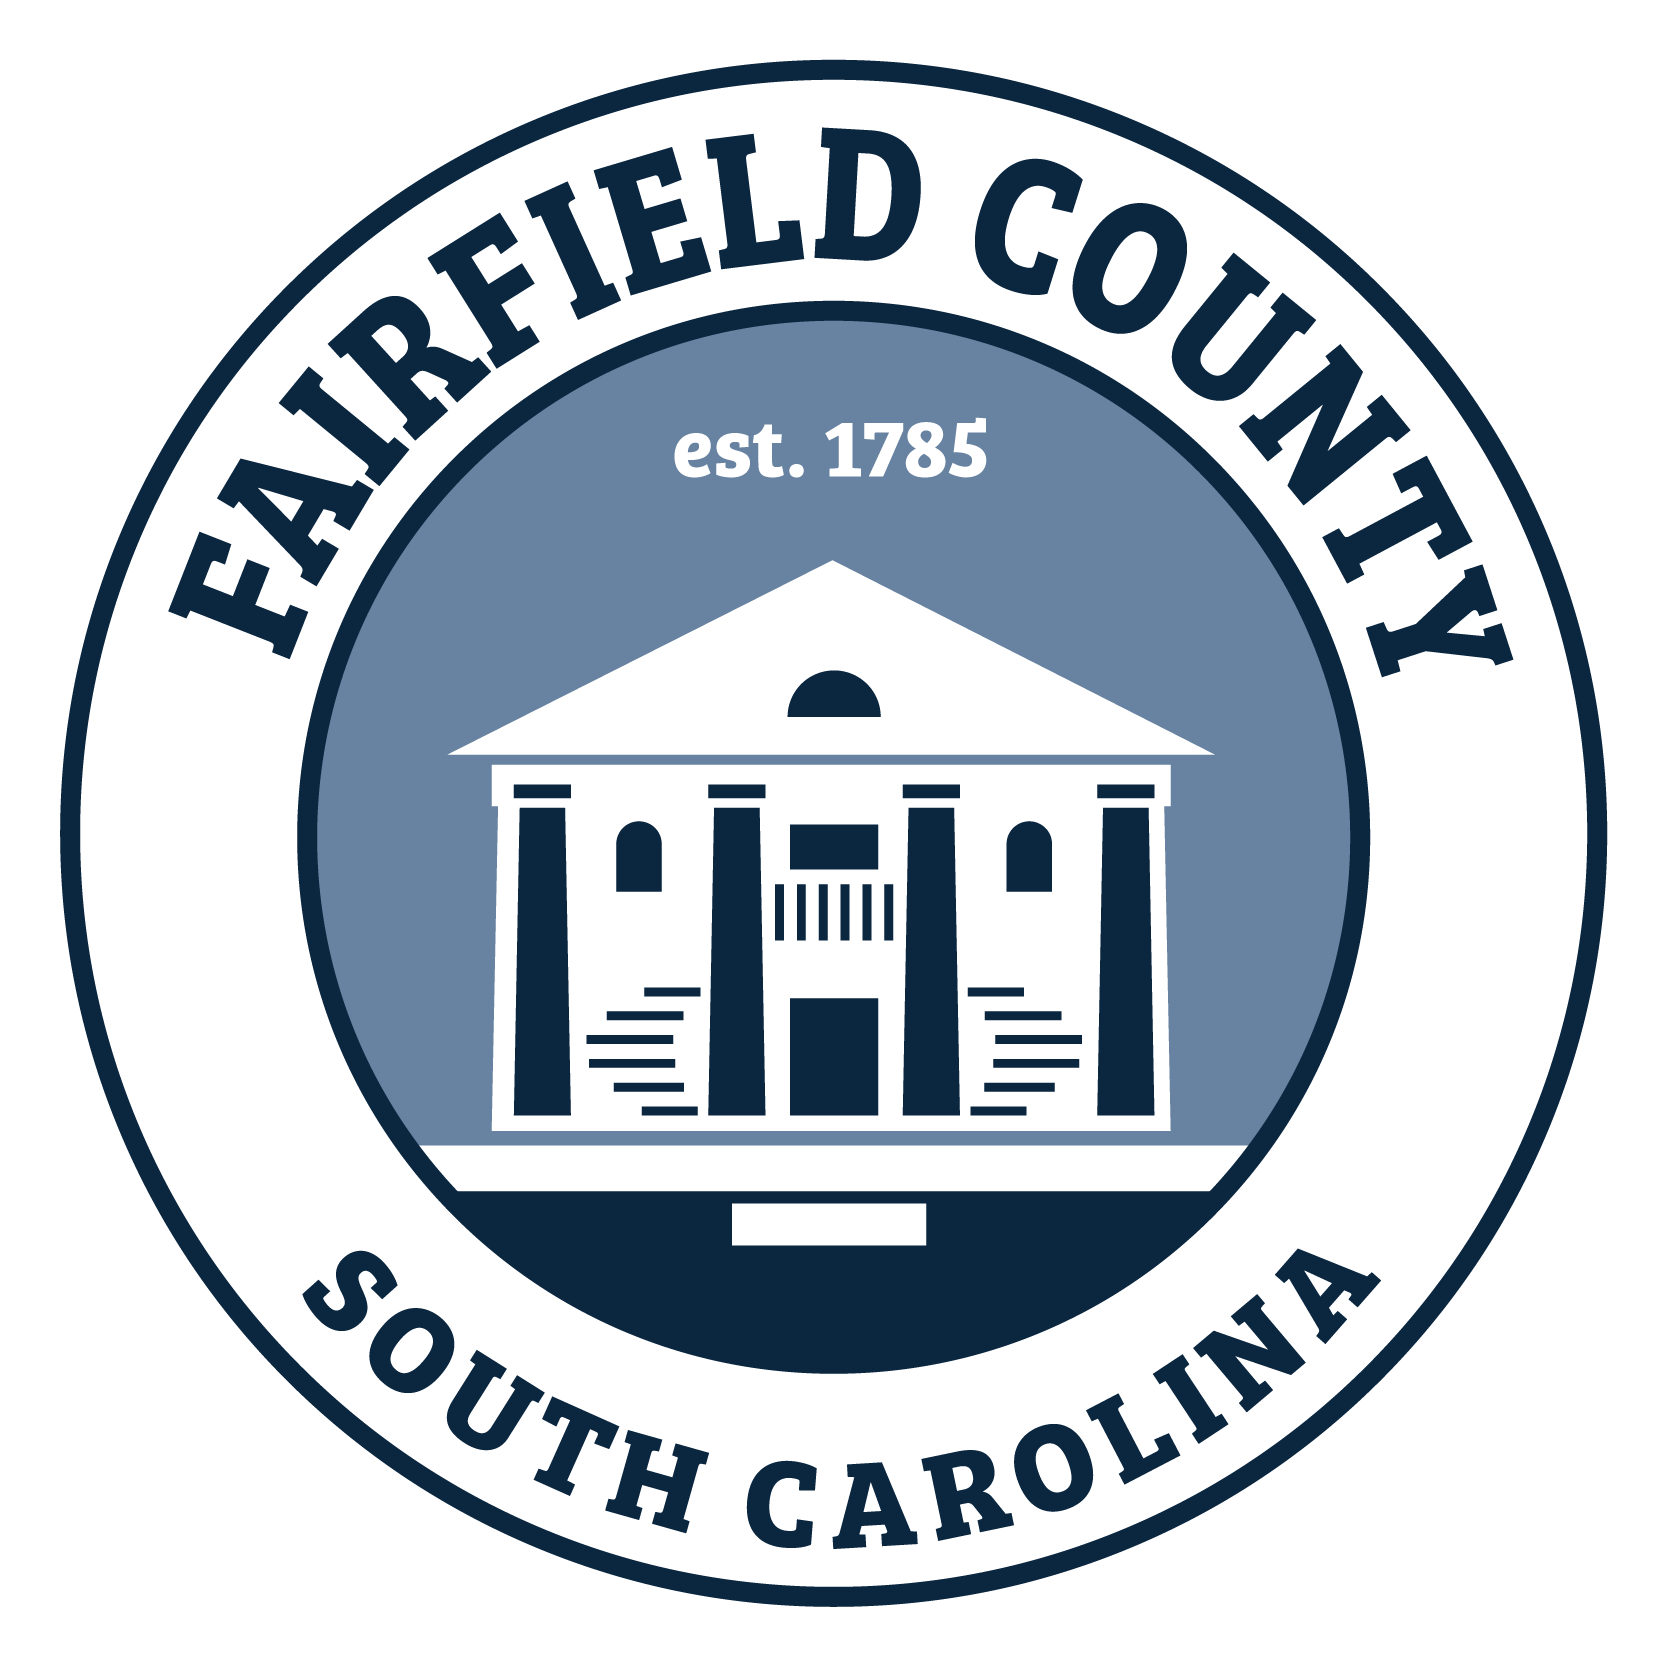 Fairfield County, South Carolina